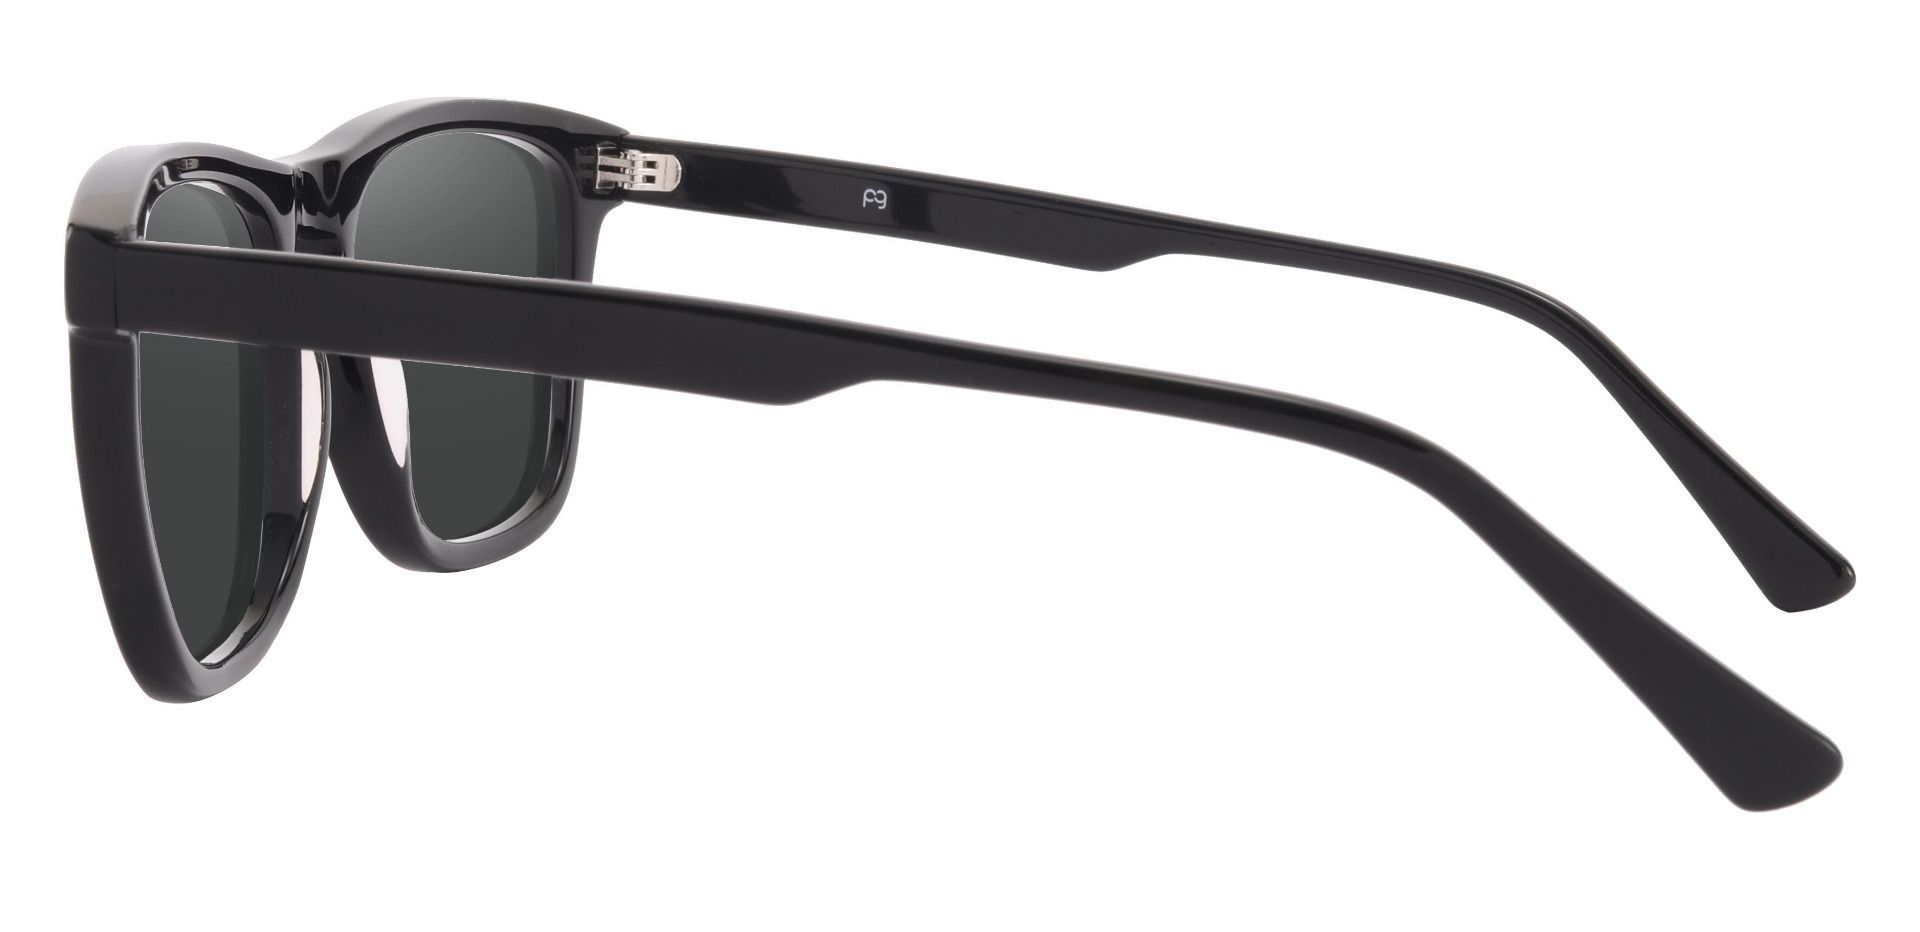 Reno Square Progressive Sunglasses - Black Frame With Gray Lenses